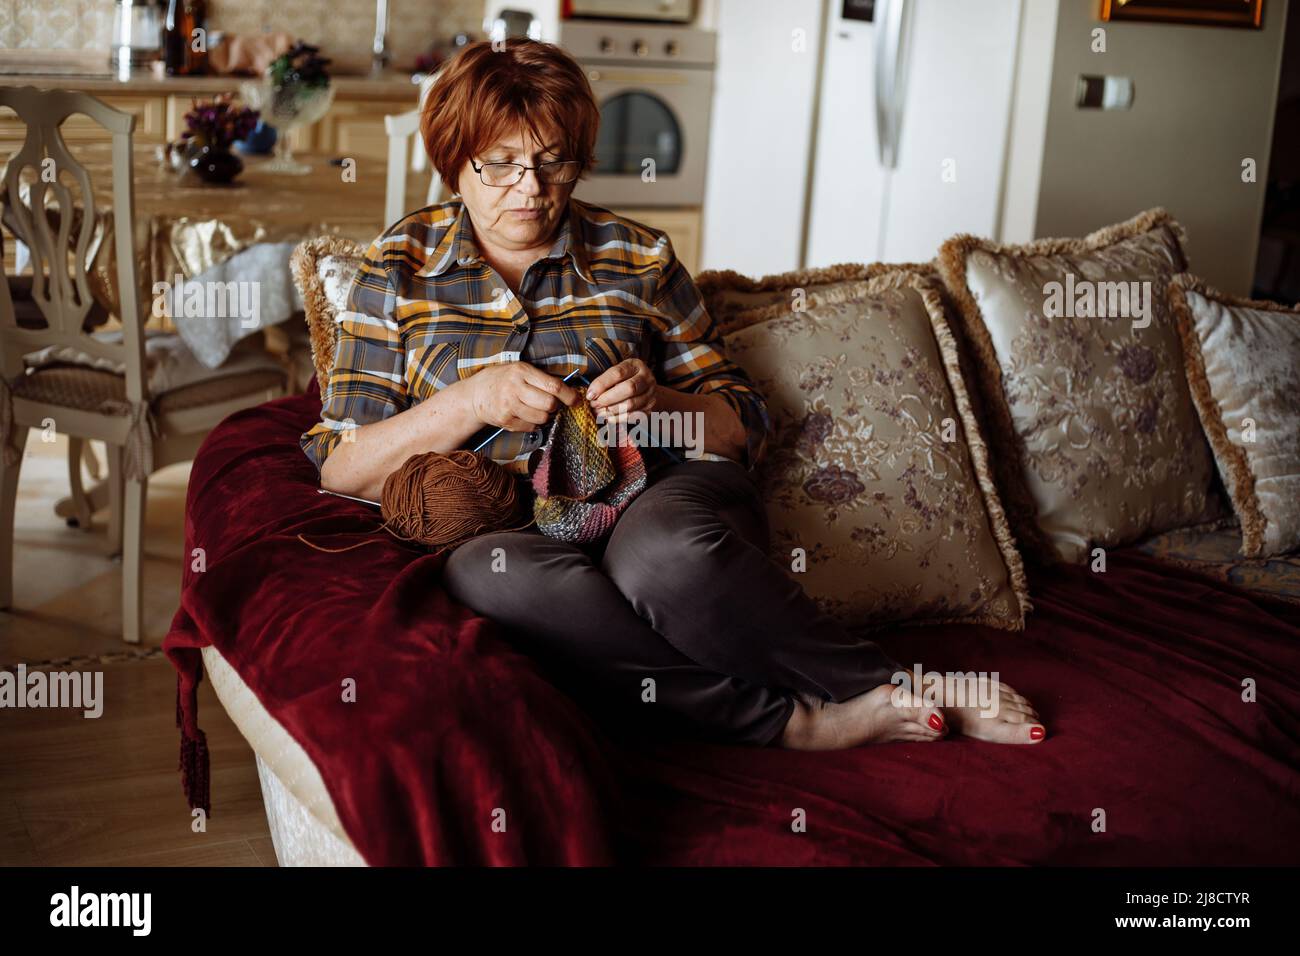 Femme mûre rouge cheveux dans des verres assis sur le canapé dans le salon et tricotage à l'aide d'aiguilles et de boule de fil. Maison de retraite de loisirs et fait à la main Banque D'Images